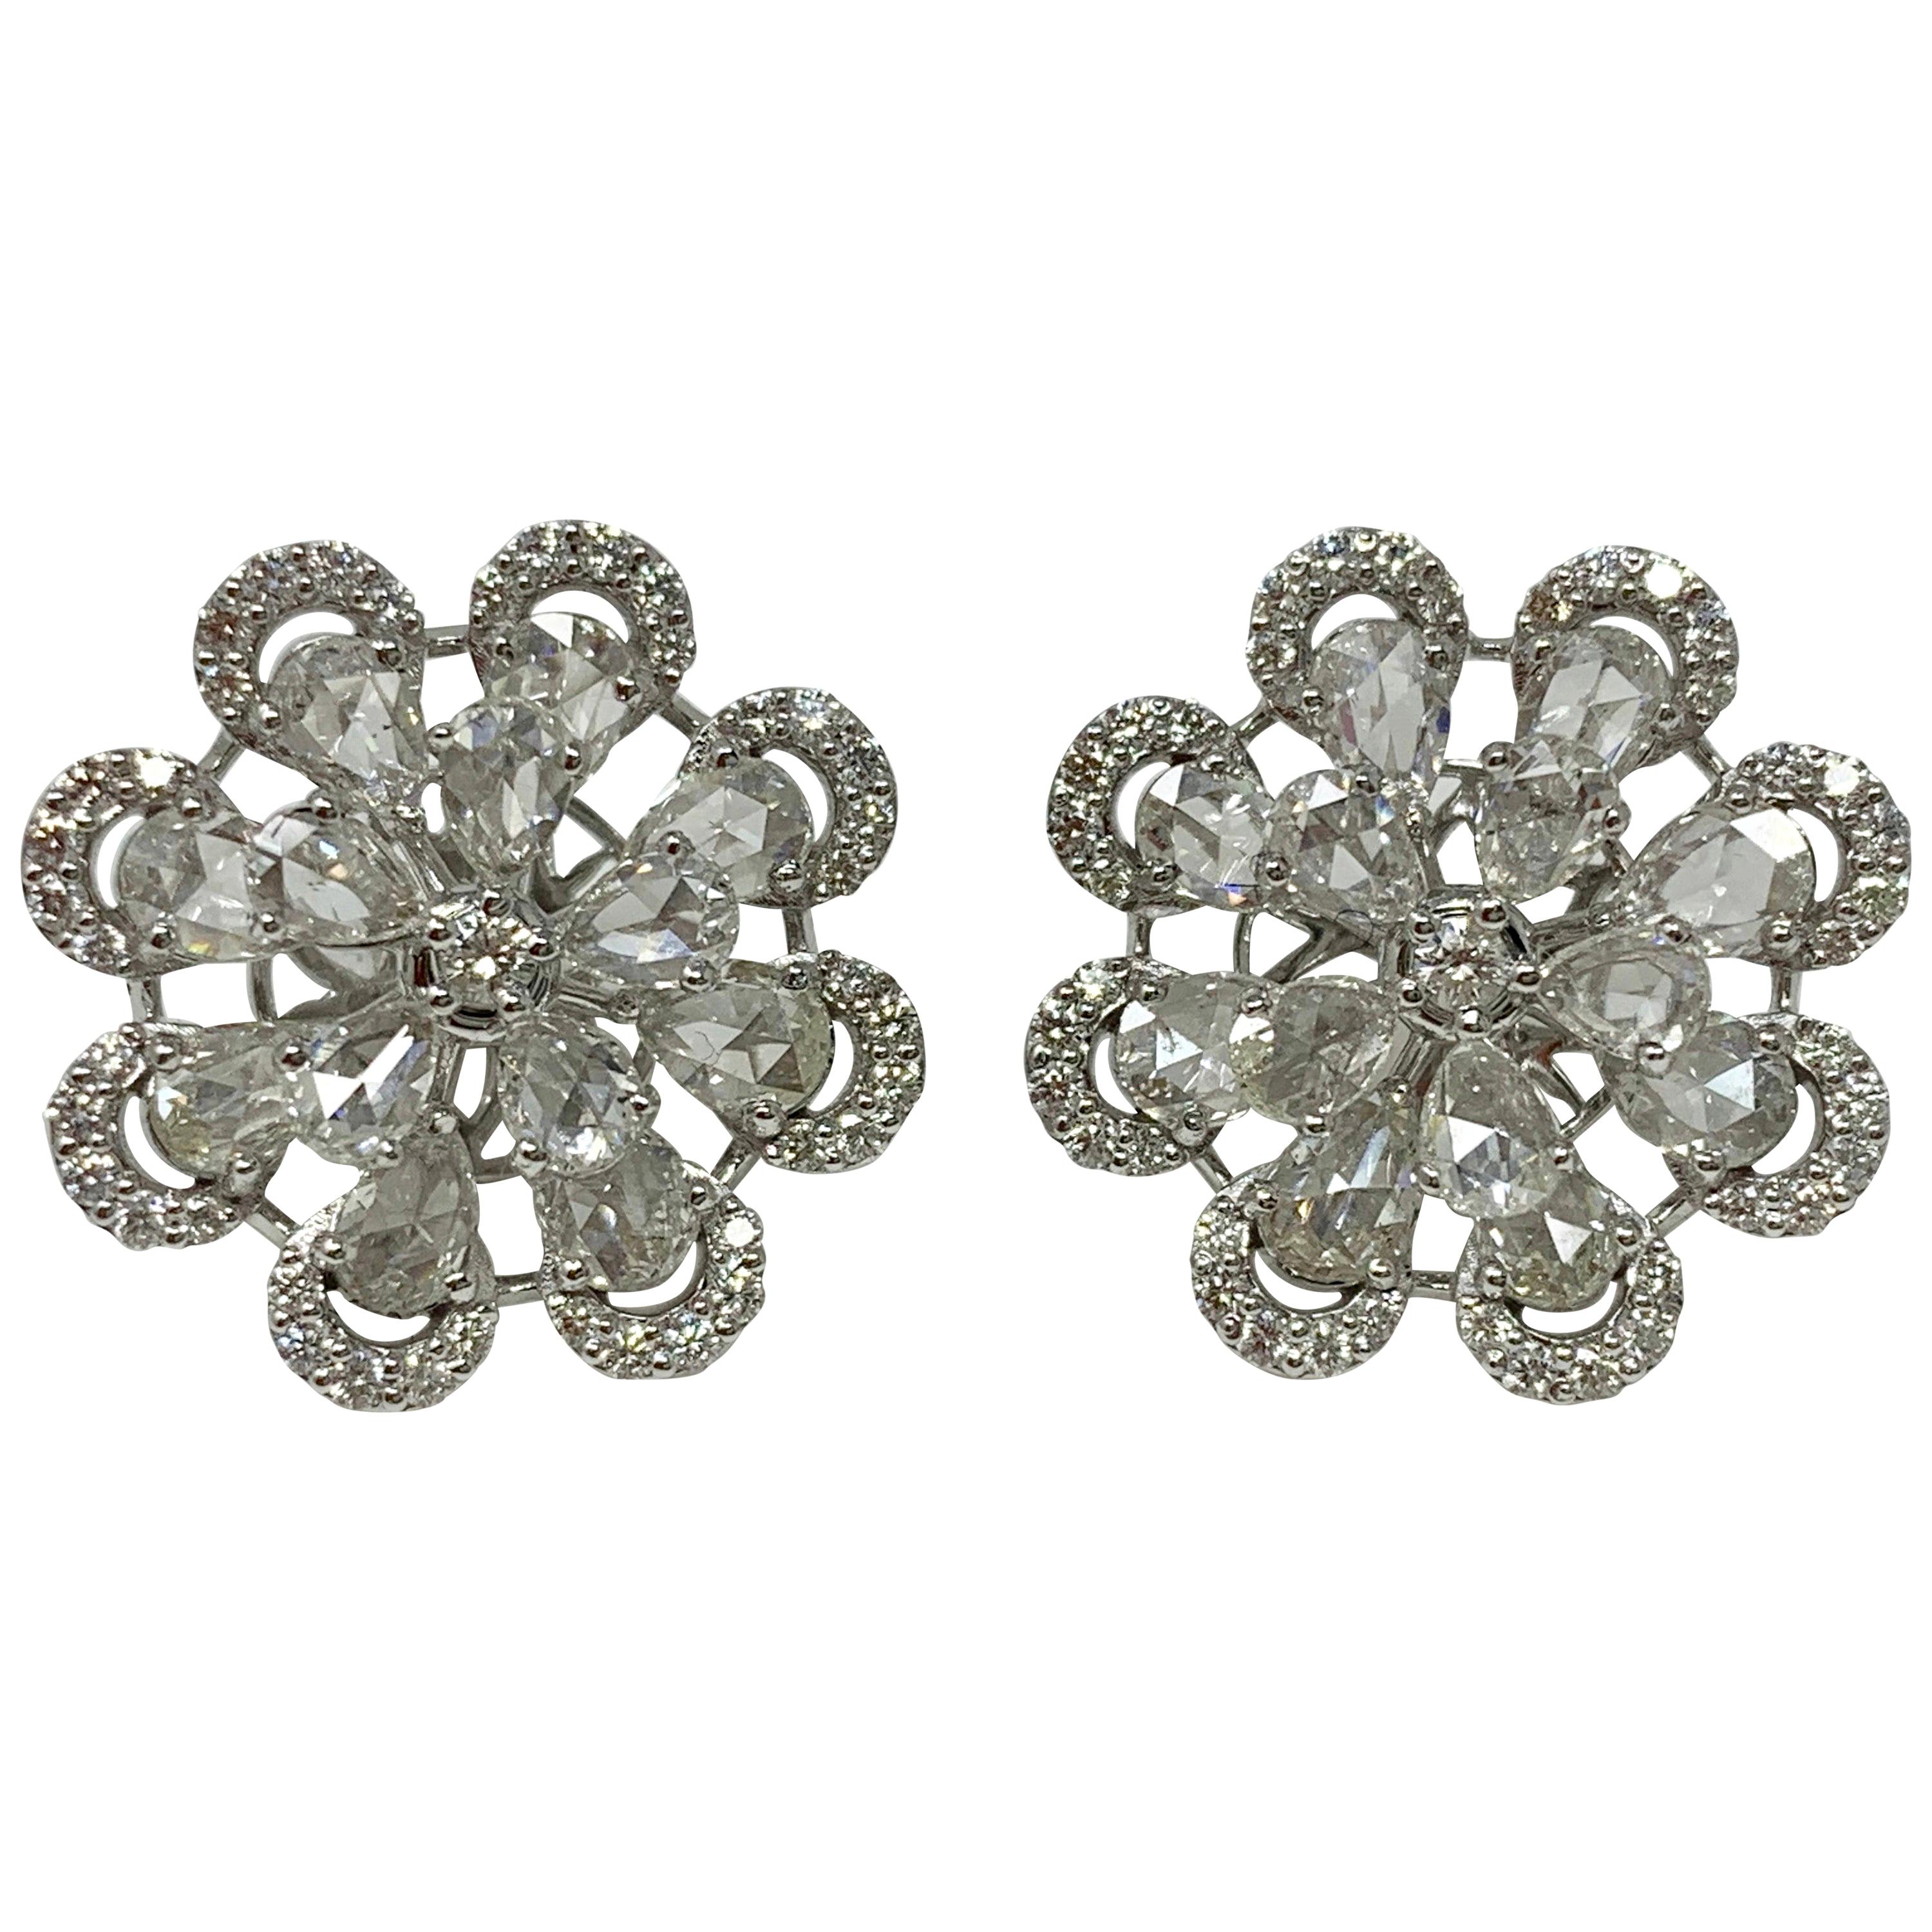 Moguldiam Inc Rose Cut Diamond Stud Earrings schön handgefertigt in 18 K Weißgold. 
Gewicht des Diamanten: 3,60 Karat (Farbe GH und Reinheit VS) 
Metall: 18 K Weißgold 
video ist auf Anfrage erhältlich. 
